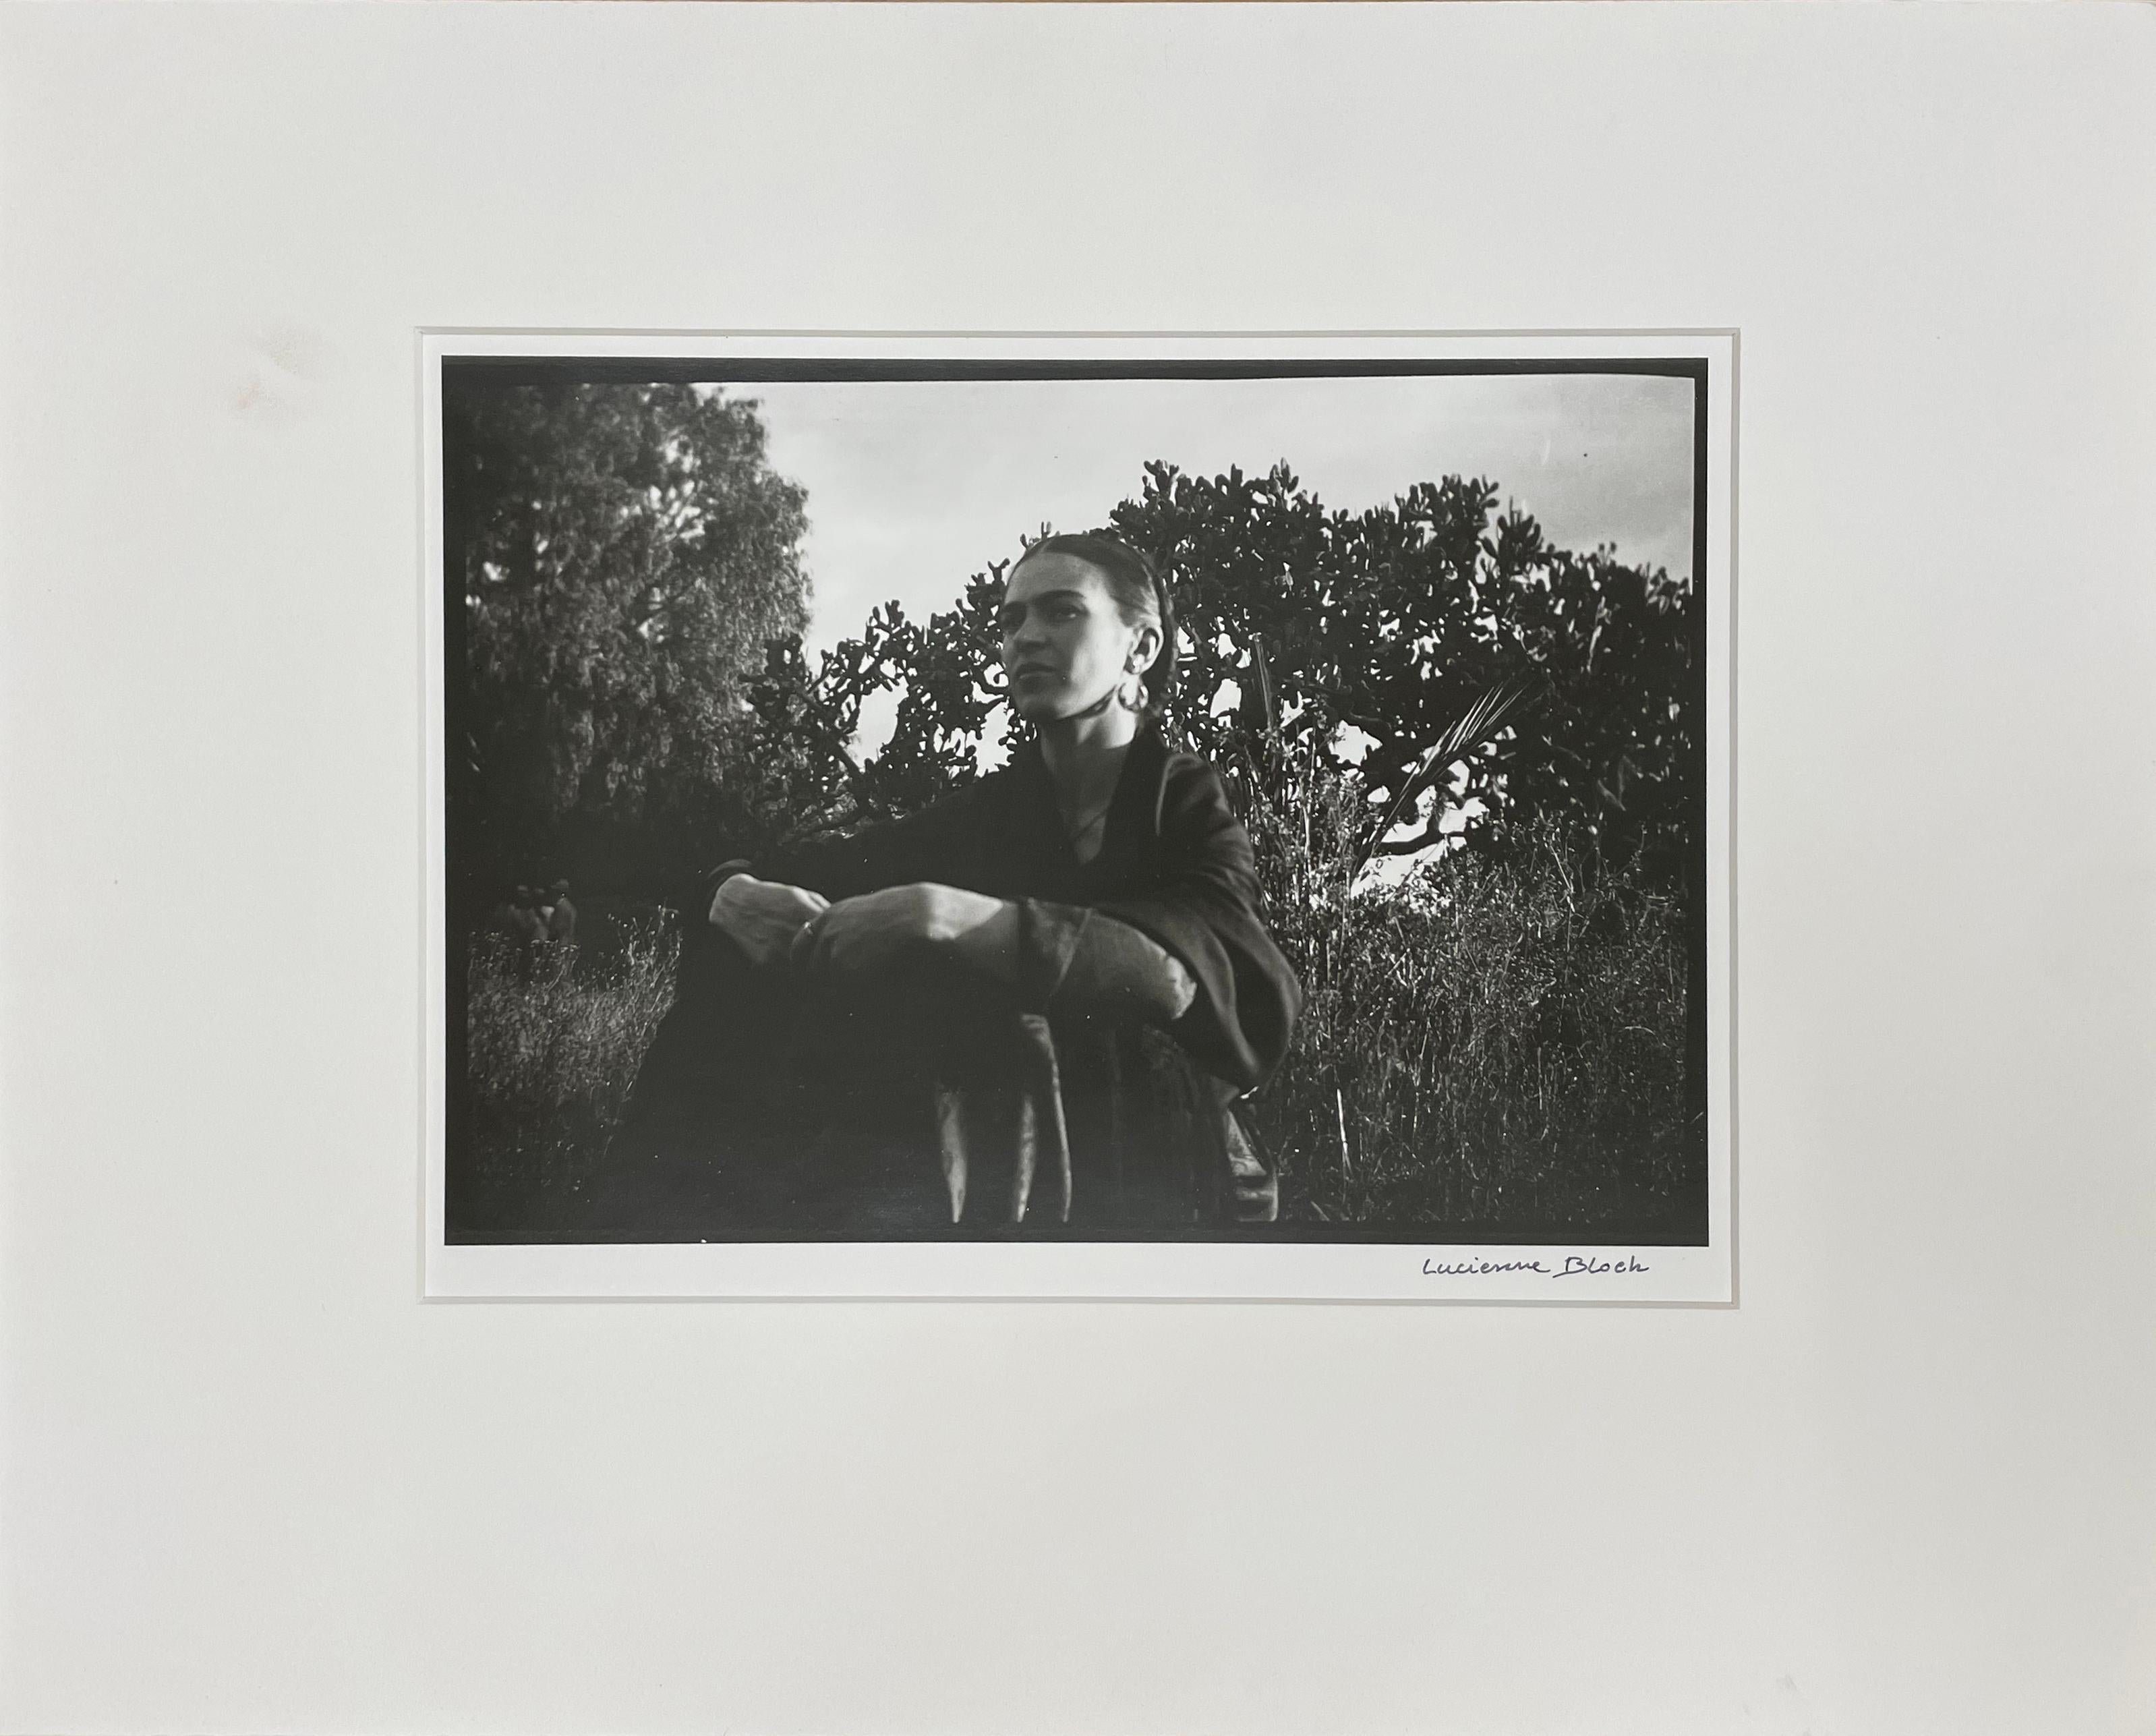 Frida mit dem Kaktus – Photograph von Lucienne Bloch